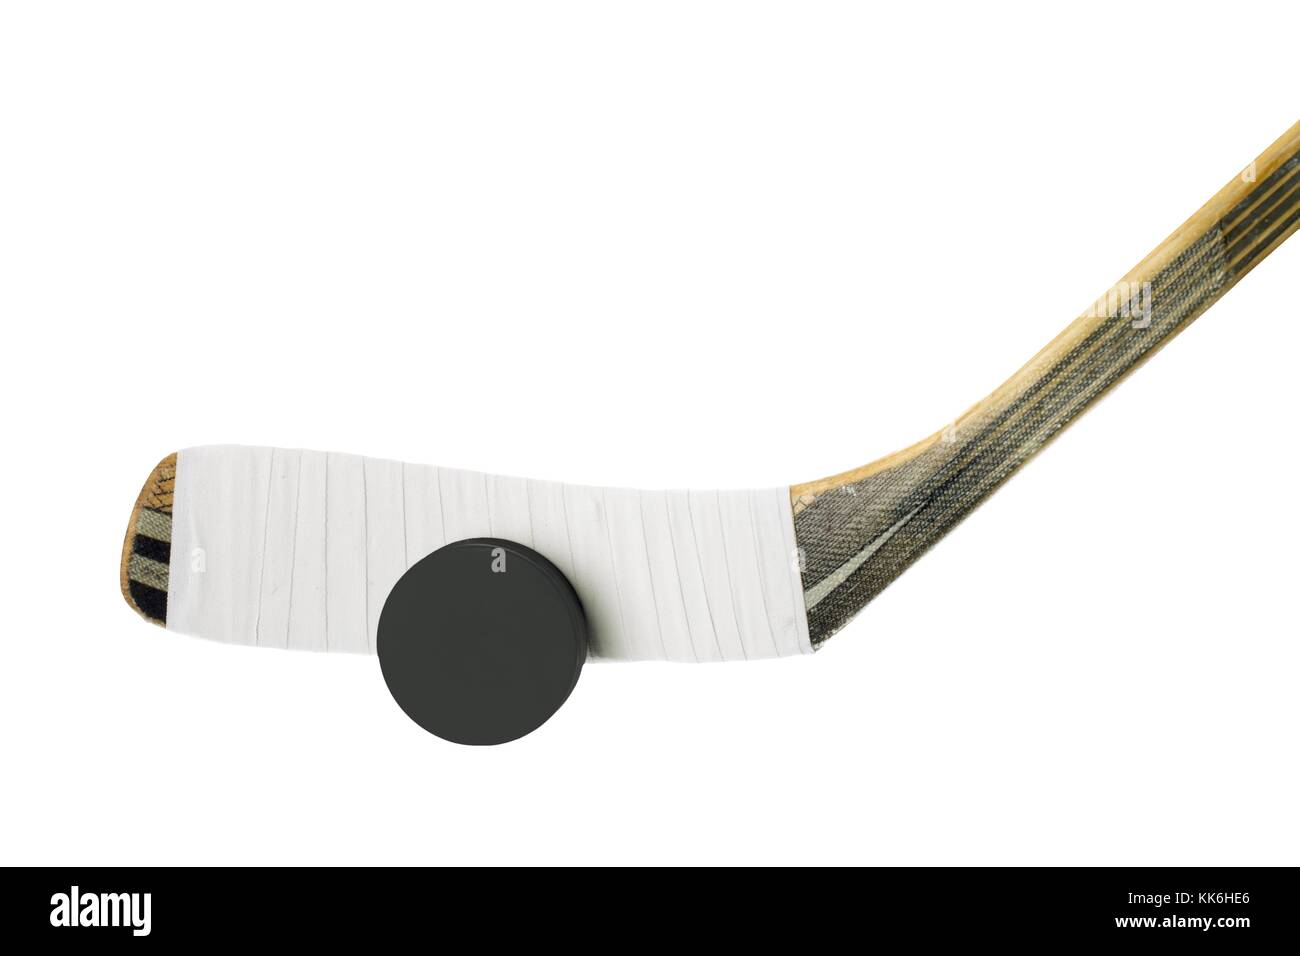 jeu de hockey sur glace Banque D'Images